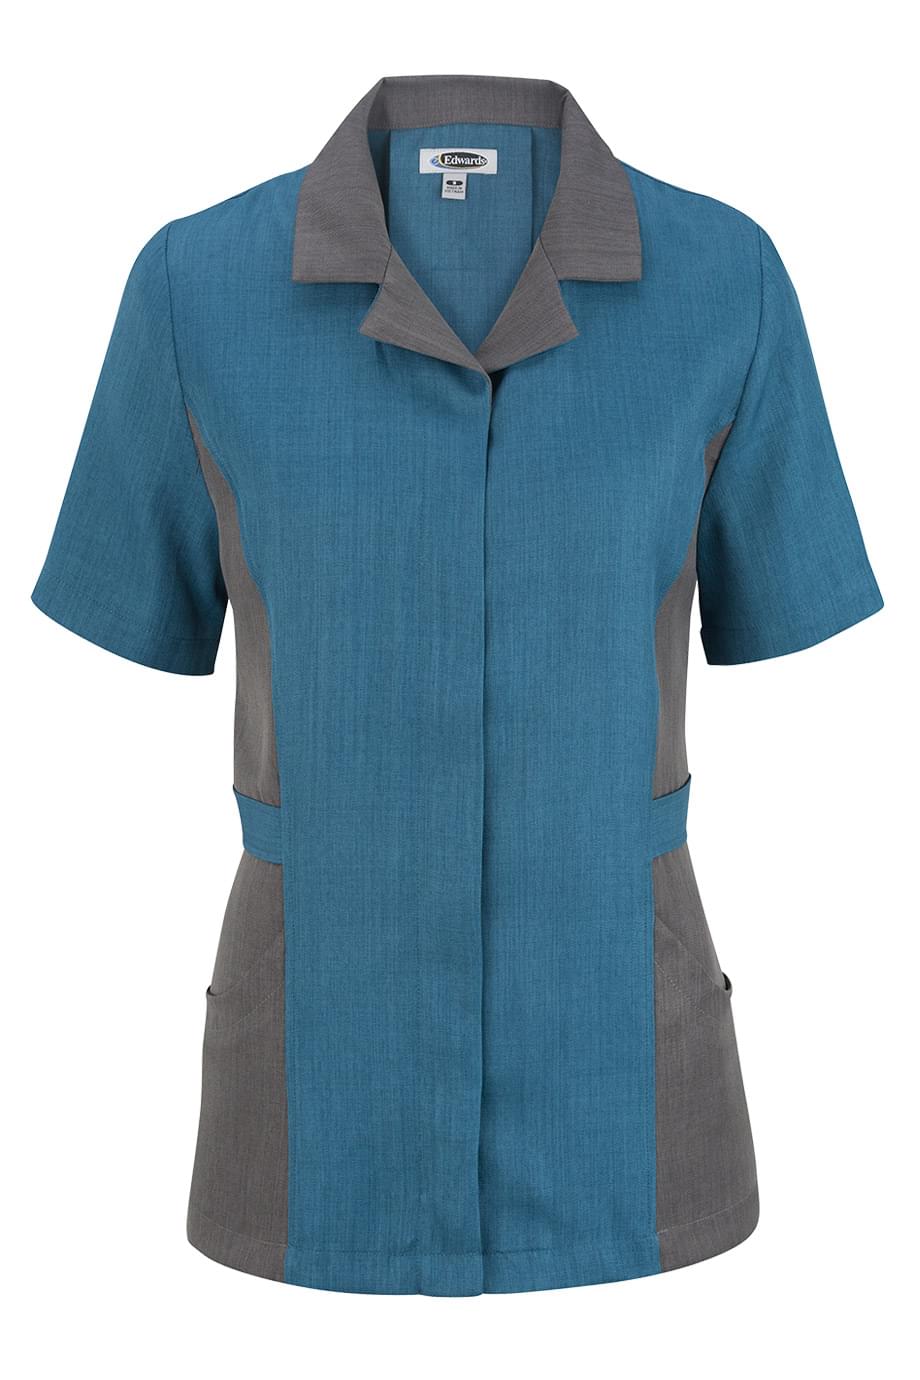 Premier Ladies' Housekeeping Tunic - Imperial Blue